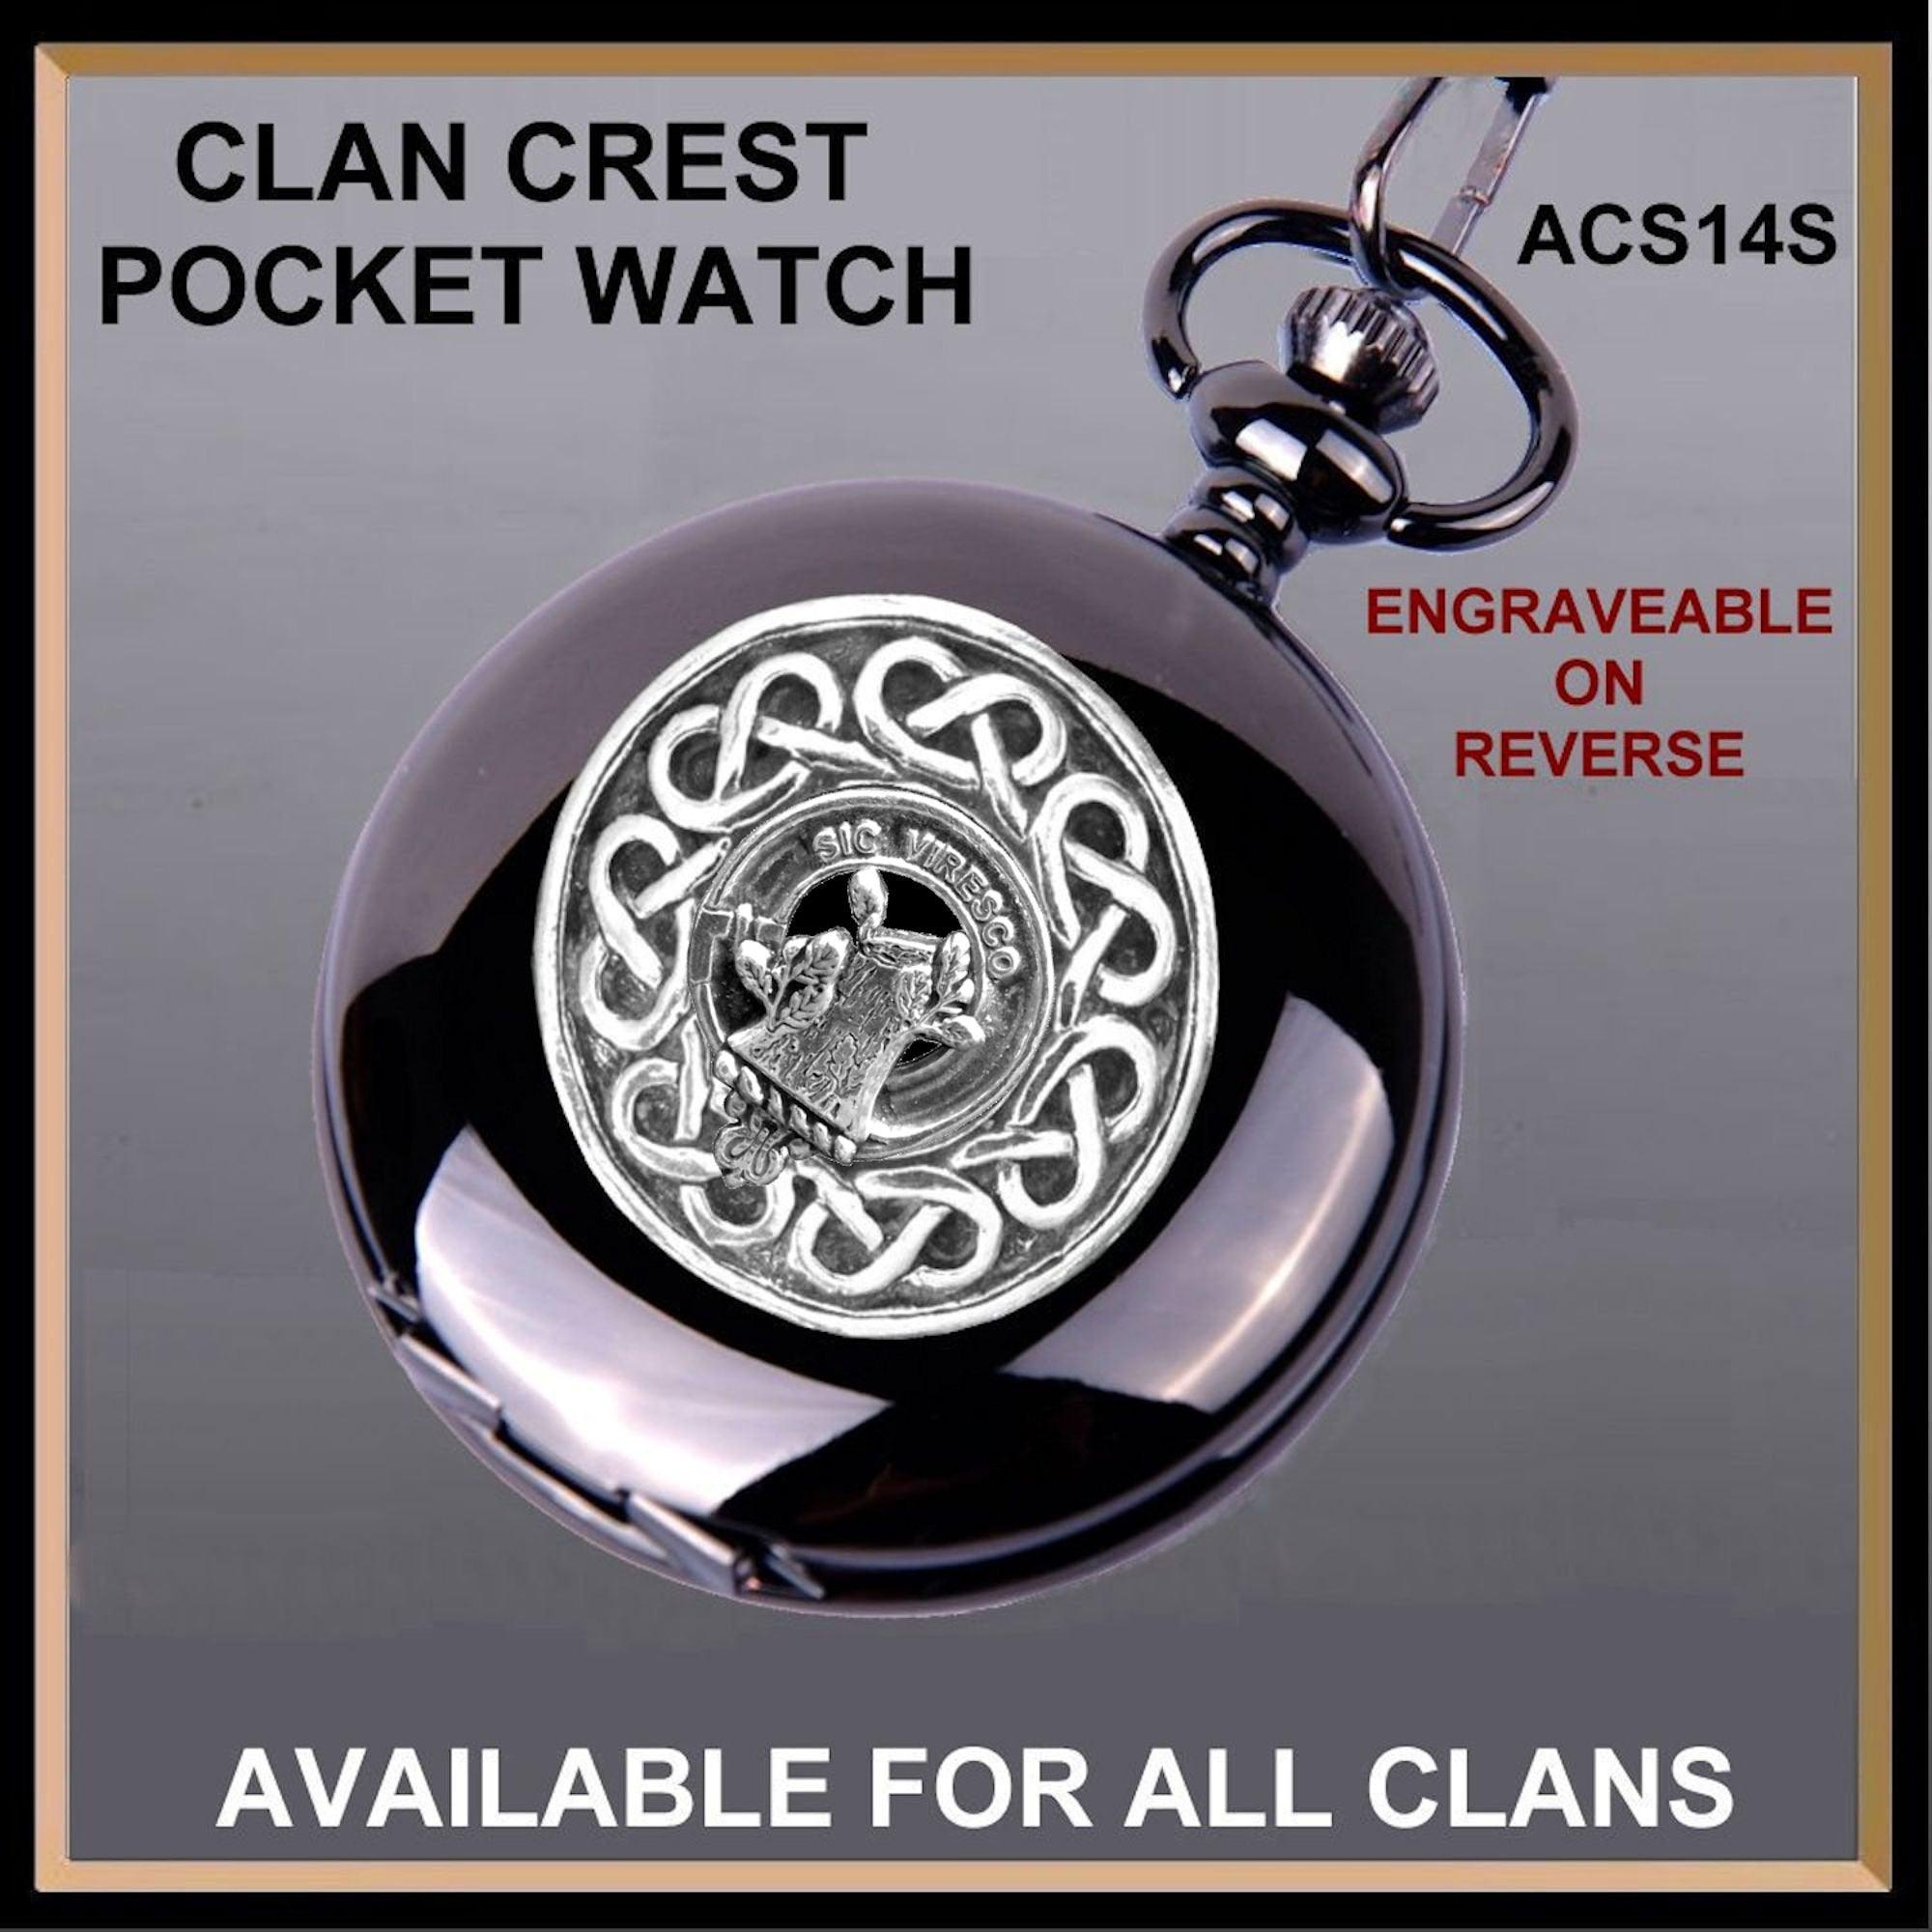 Christie Scottish Clan Crest Pocket Watch